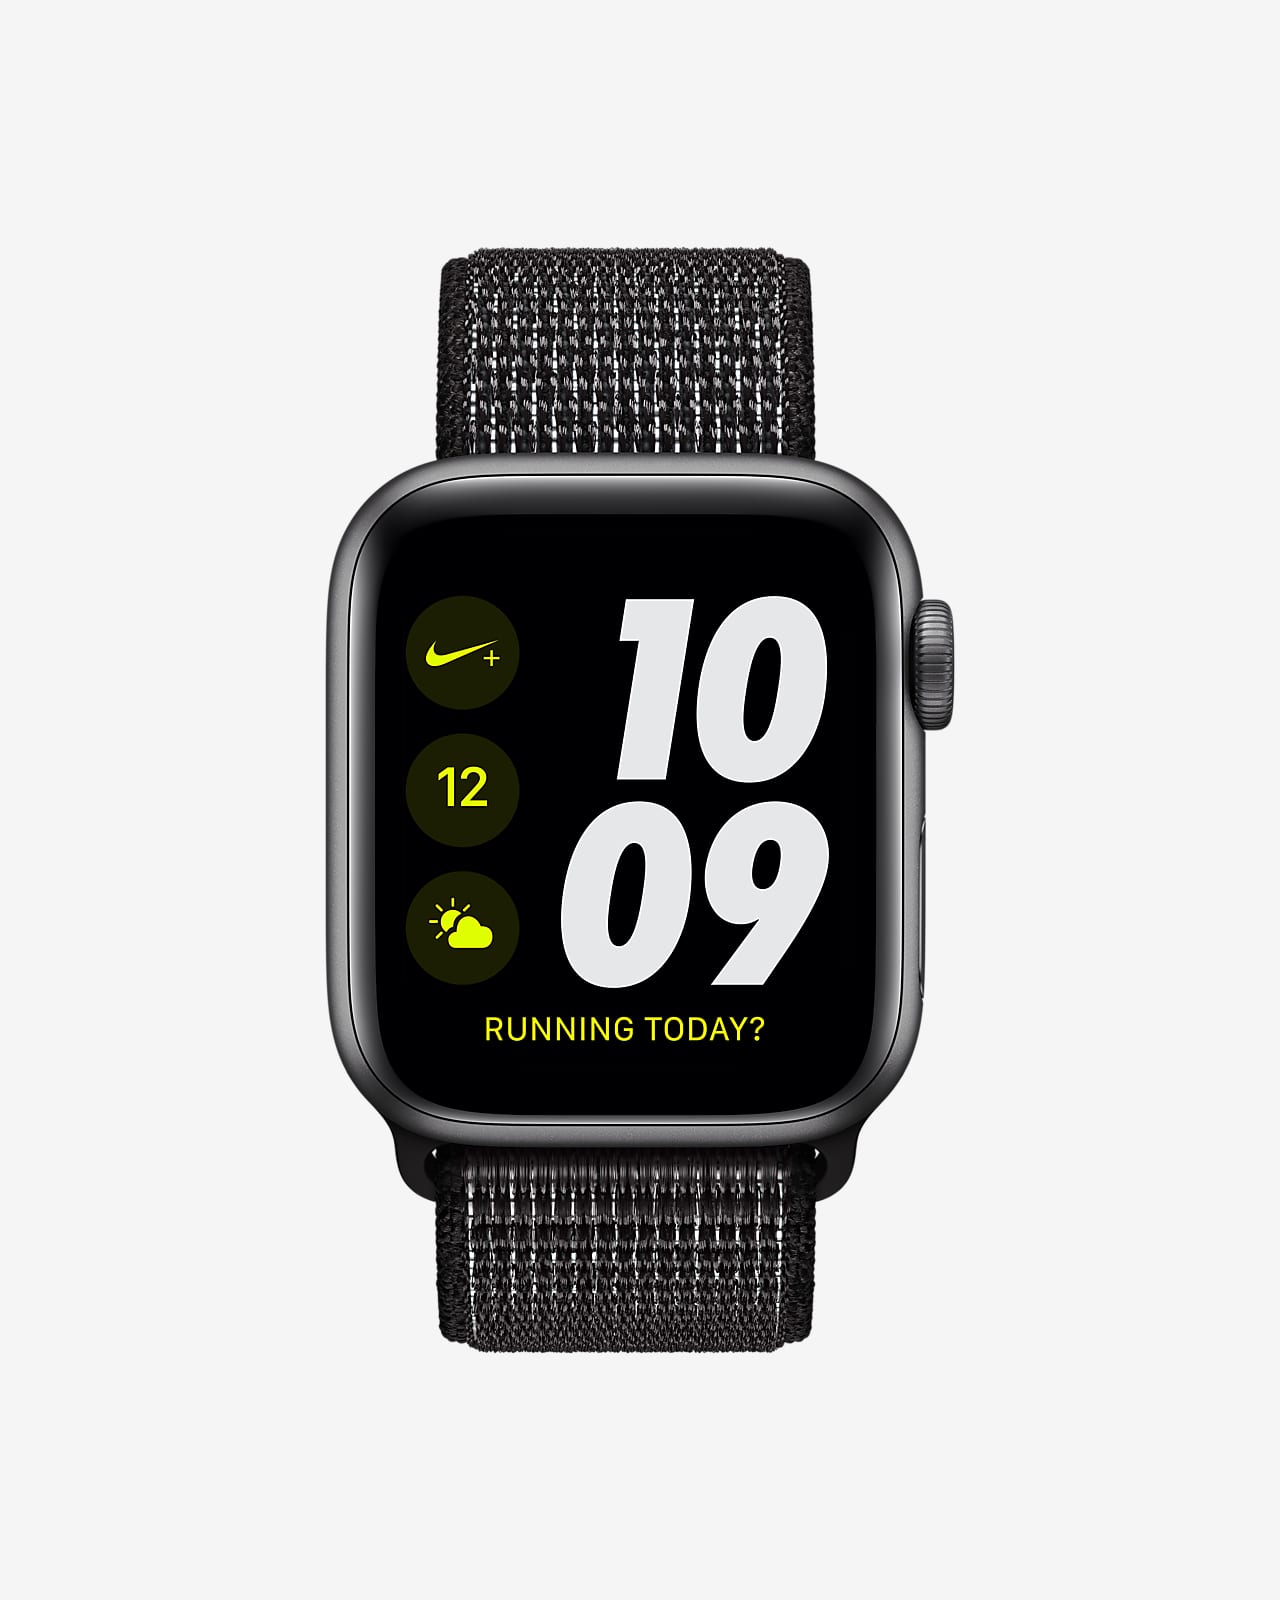 Apple Watch Nike+ Series 4 - 40mm